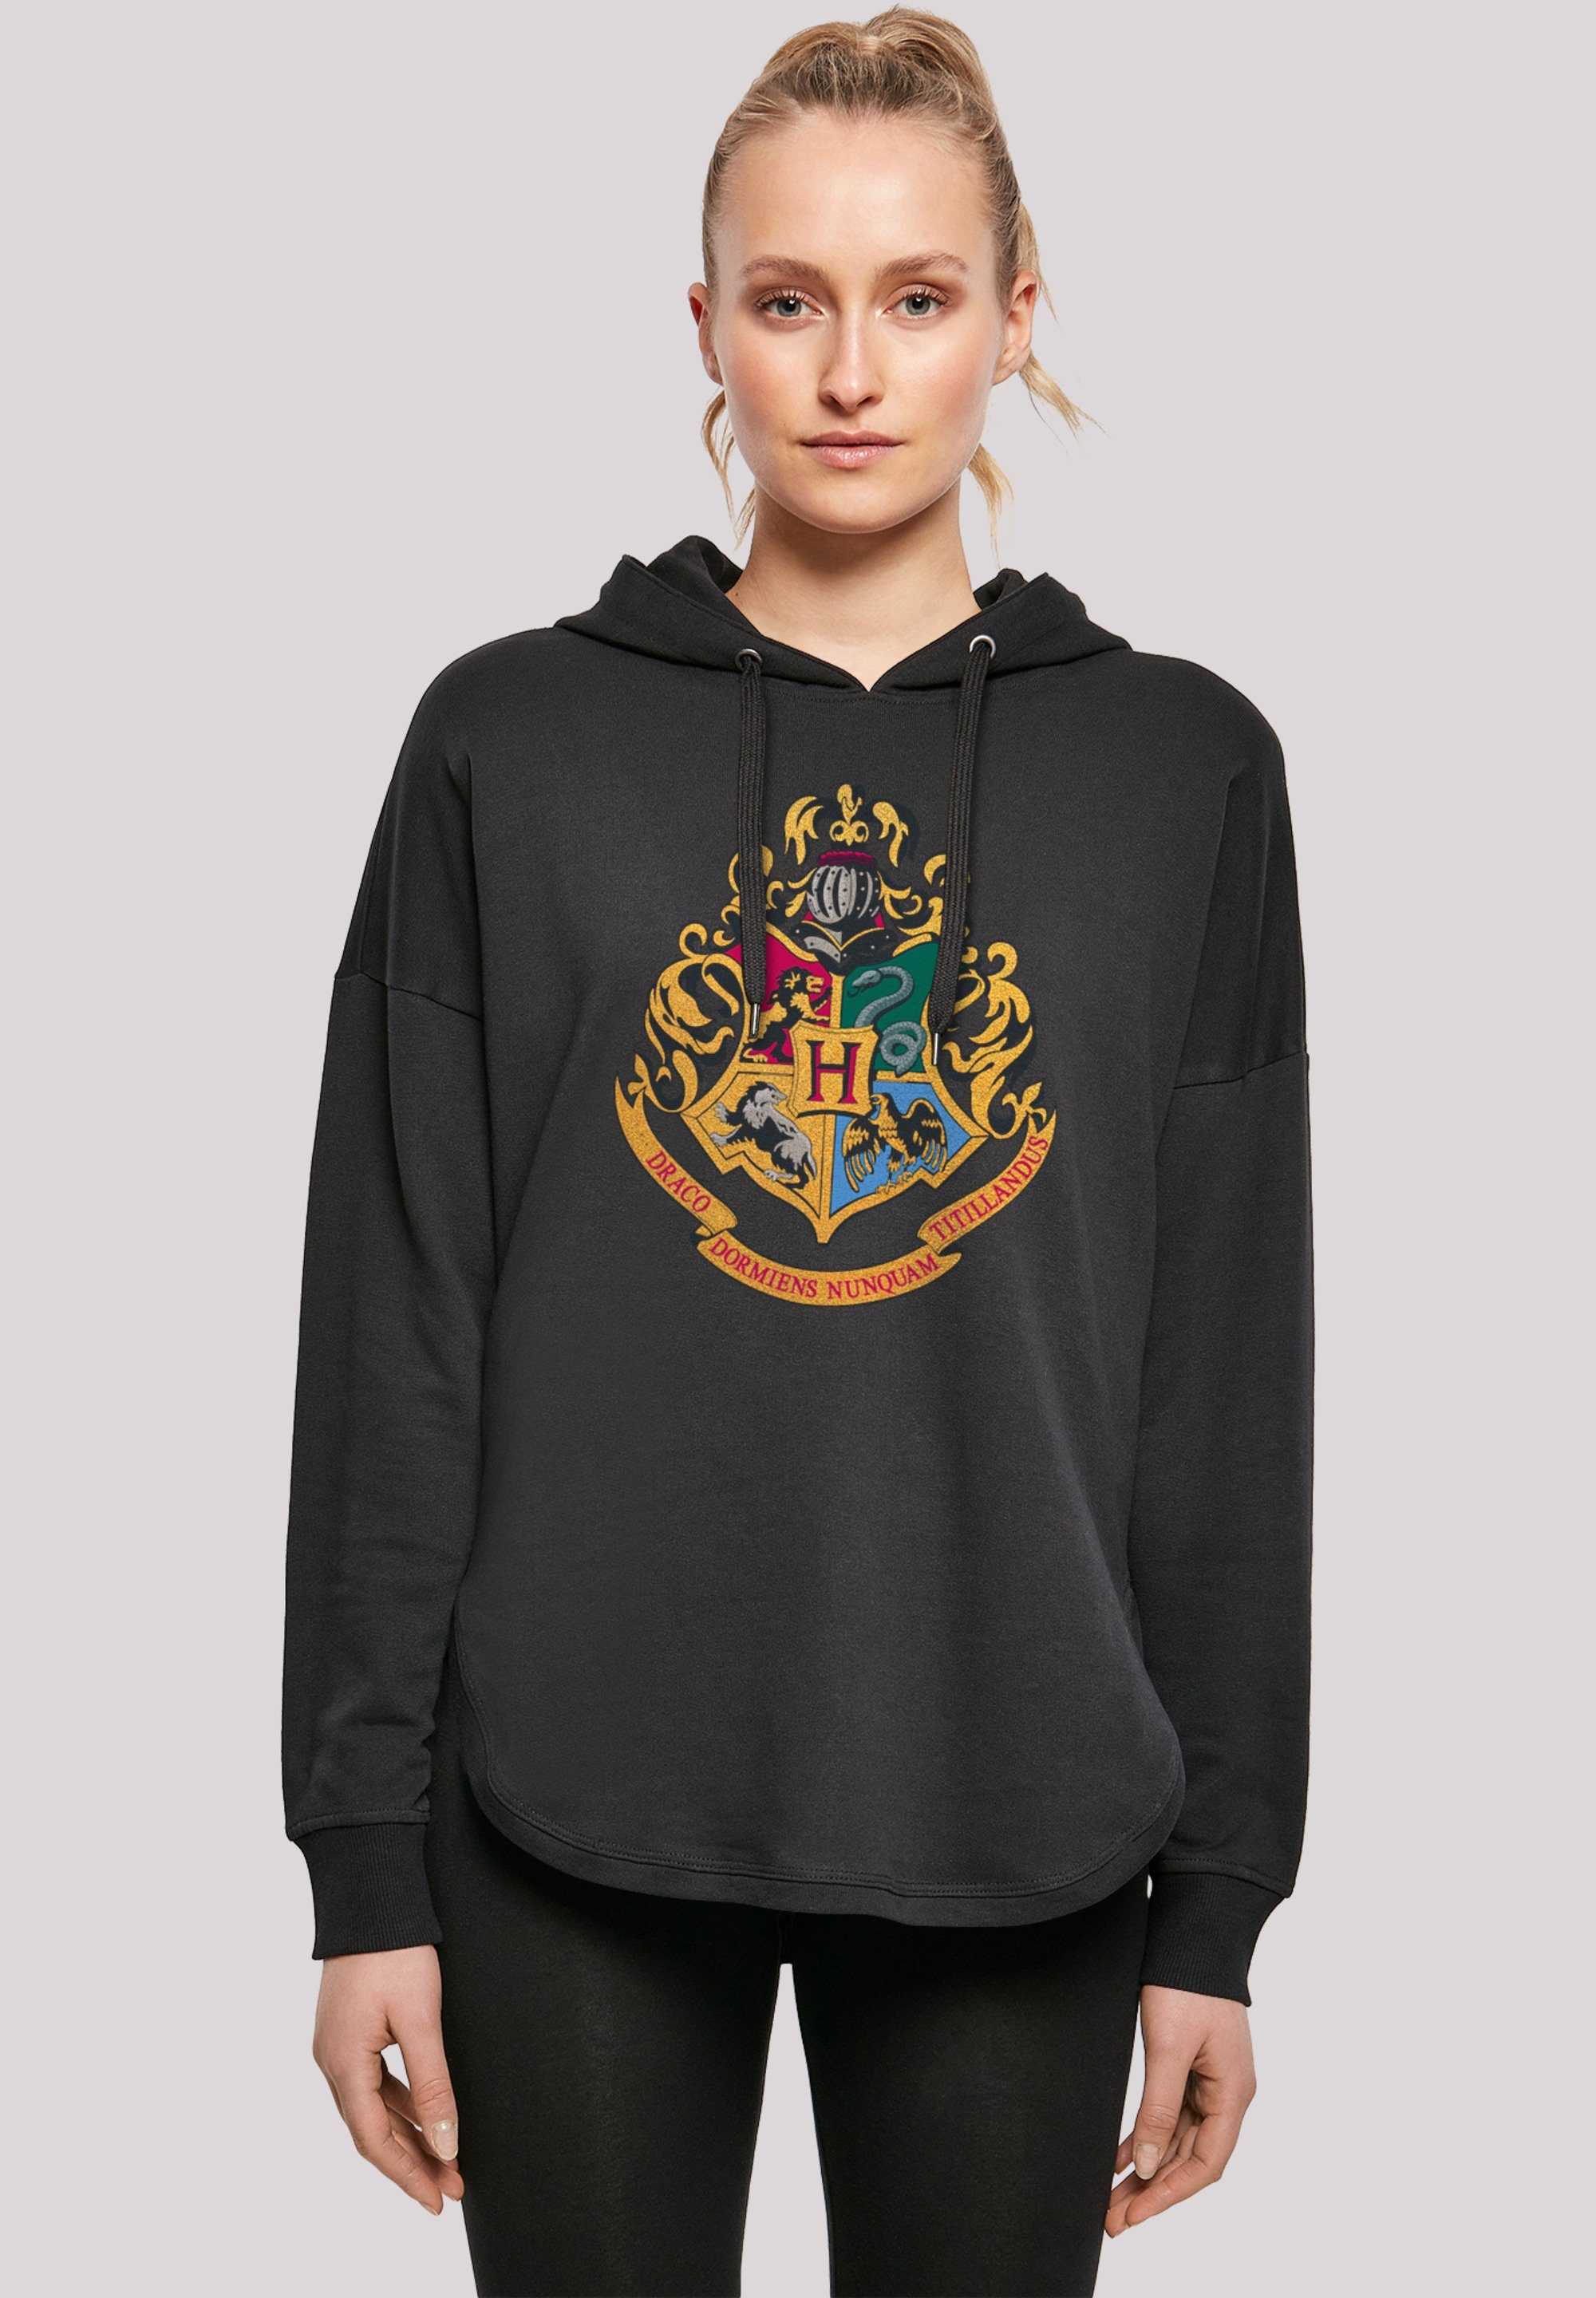 F4NT4STIC Crest Potter Hogwarts Harry Kapuzenpullover Print schwarz Gold